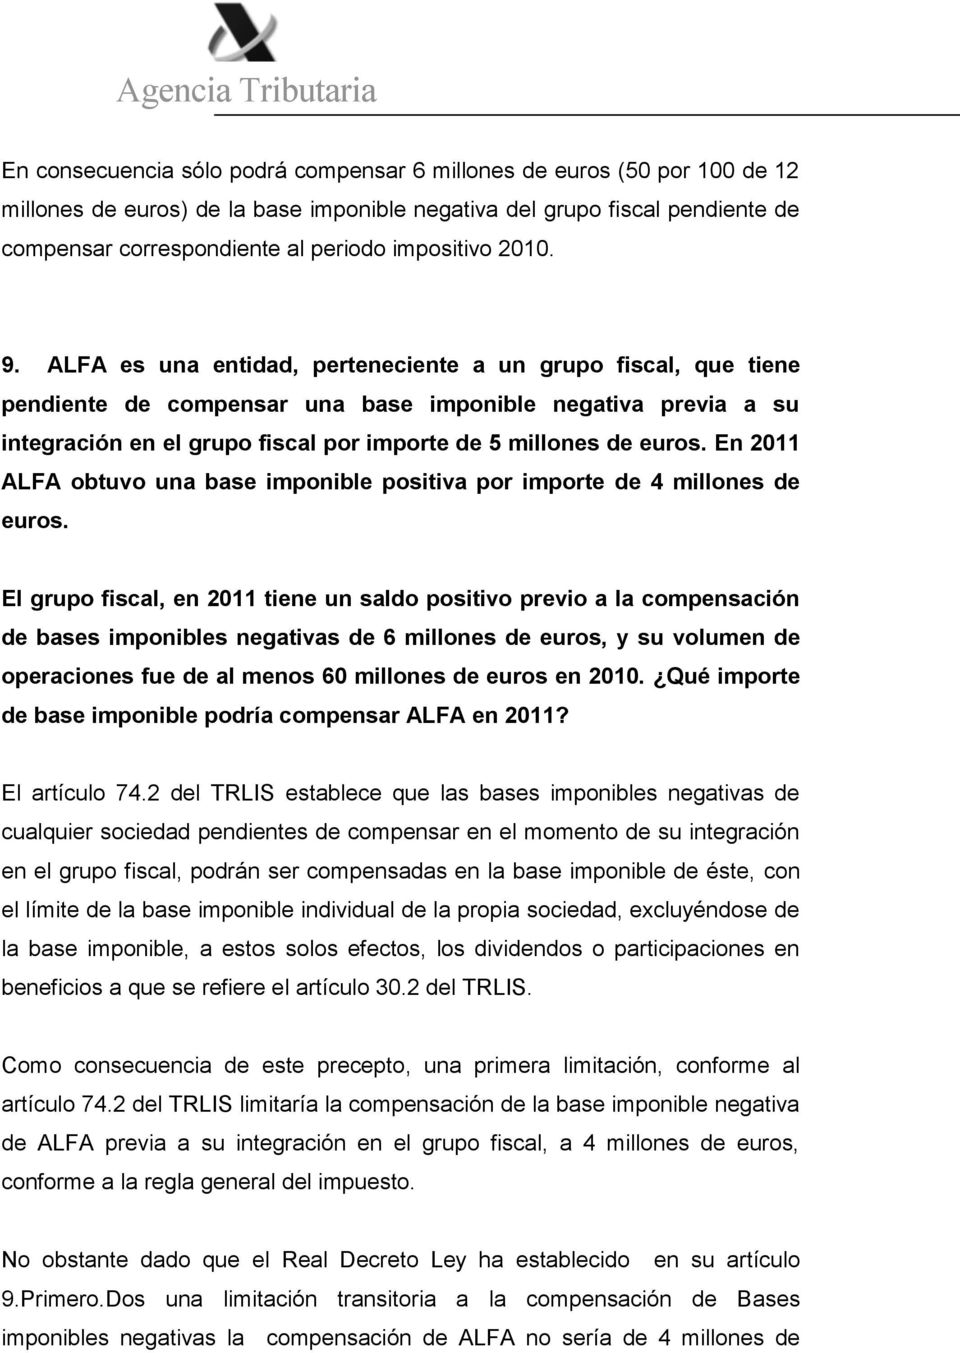 ALFA es una entidad, perteneciente a un grupo fiscal, que tiene pendiente de compensar una base imponible negativa previa a su integración en el grupo fiscal por importe de 5 millones de euros.